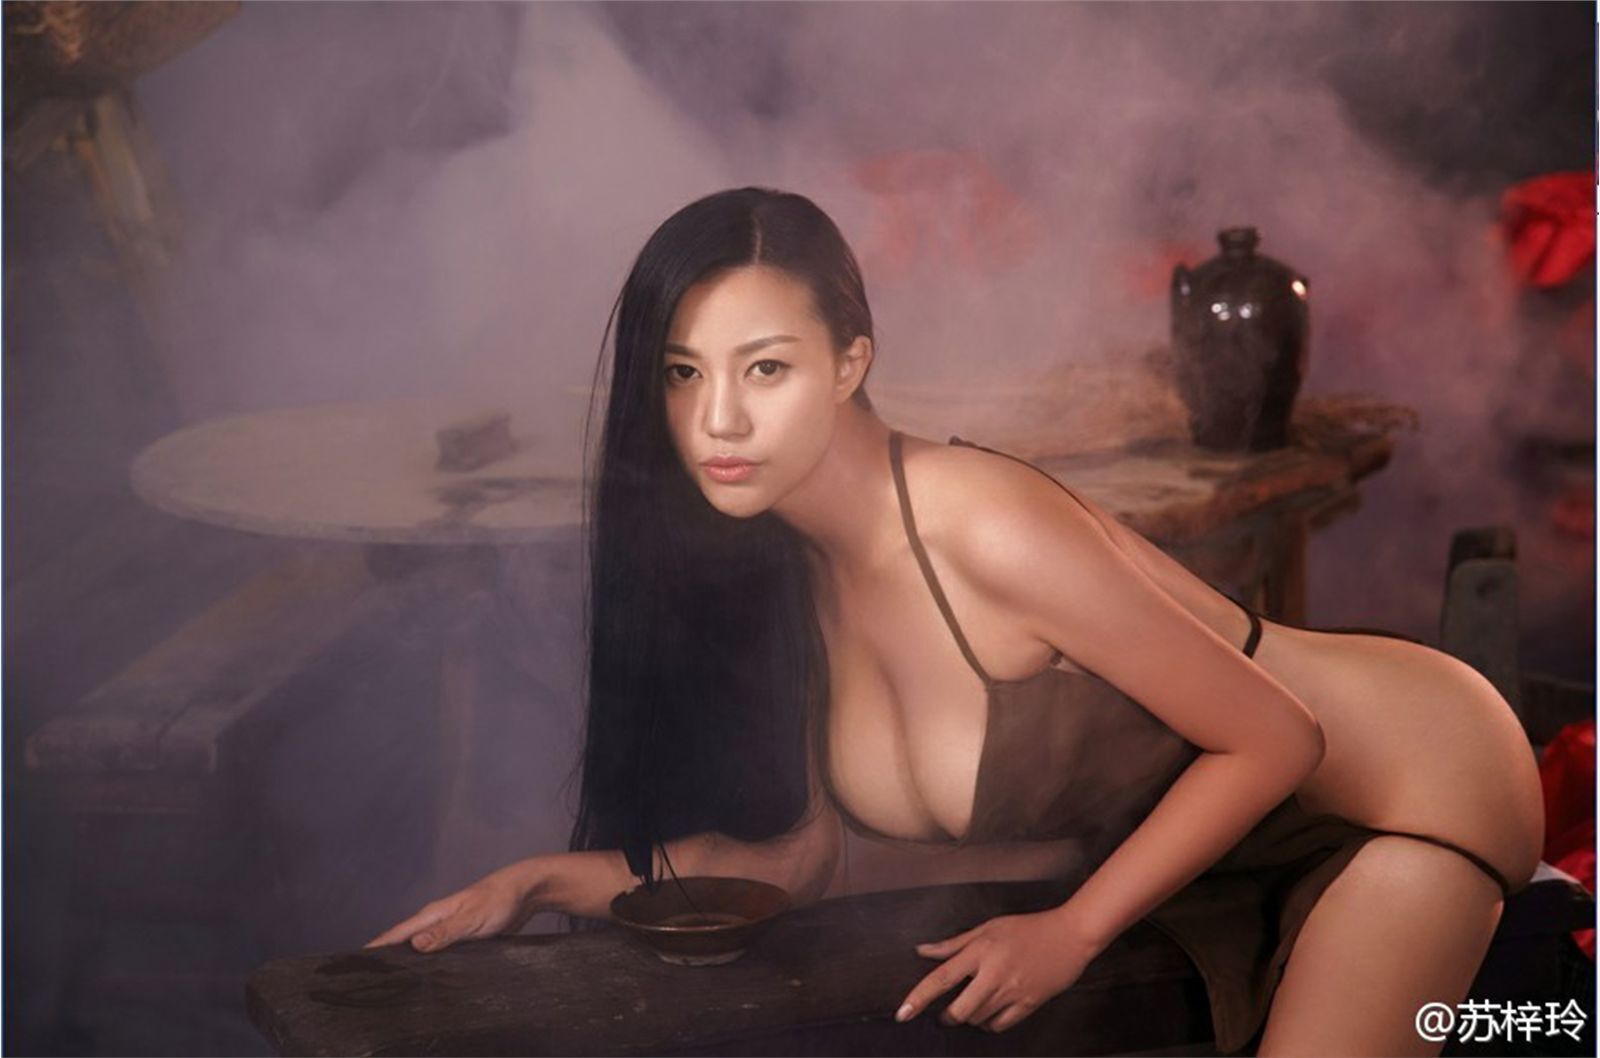 Photo album of Su Ziling